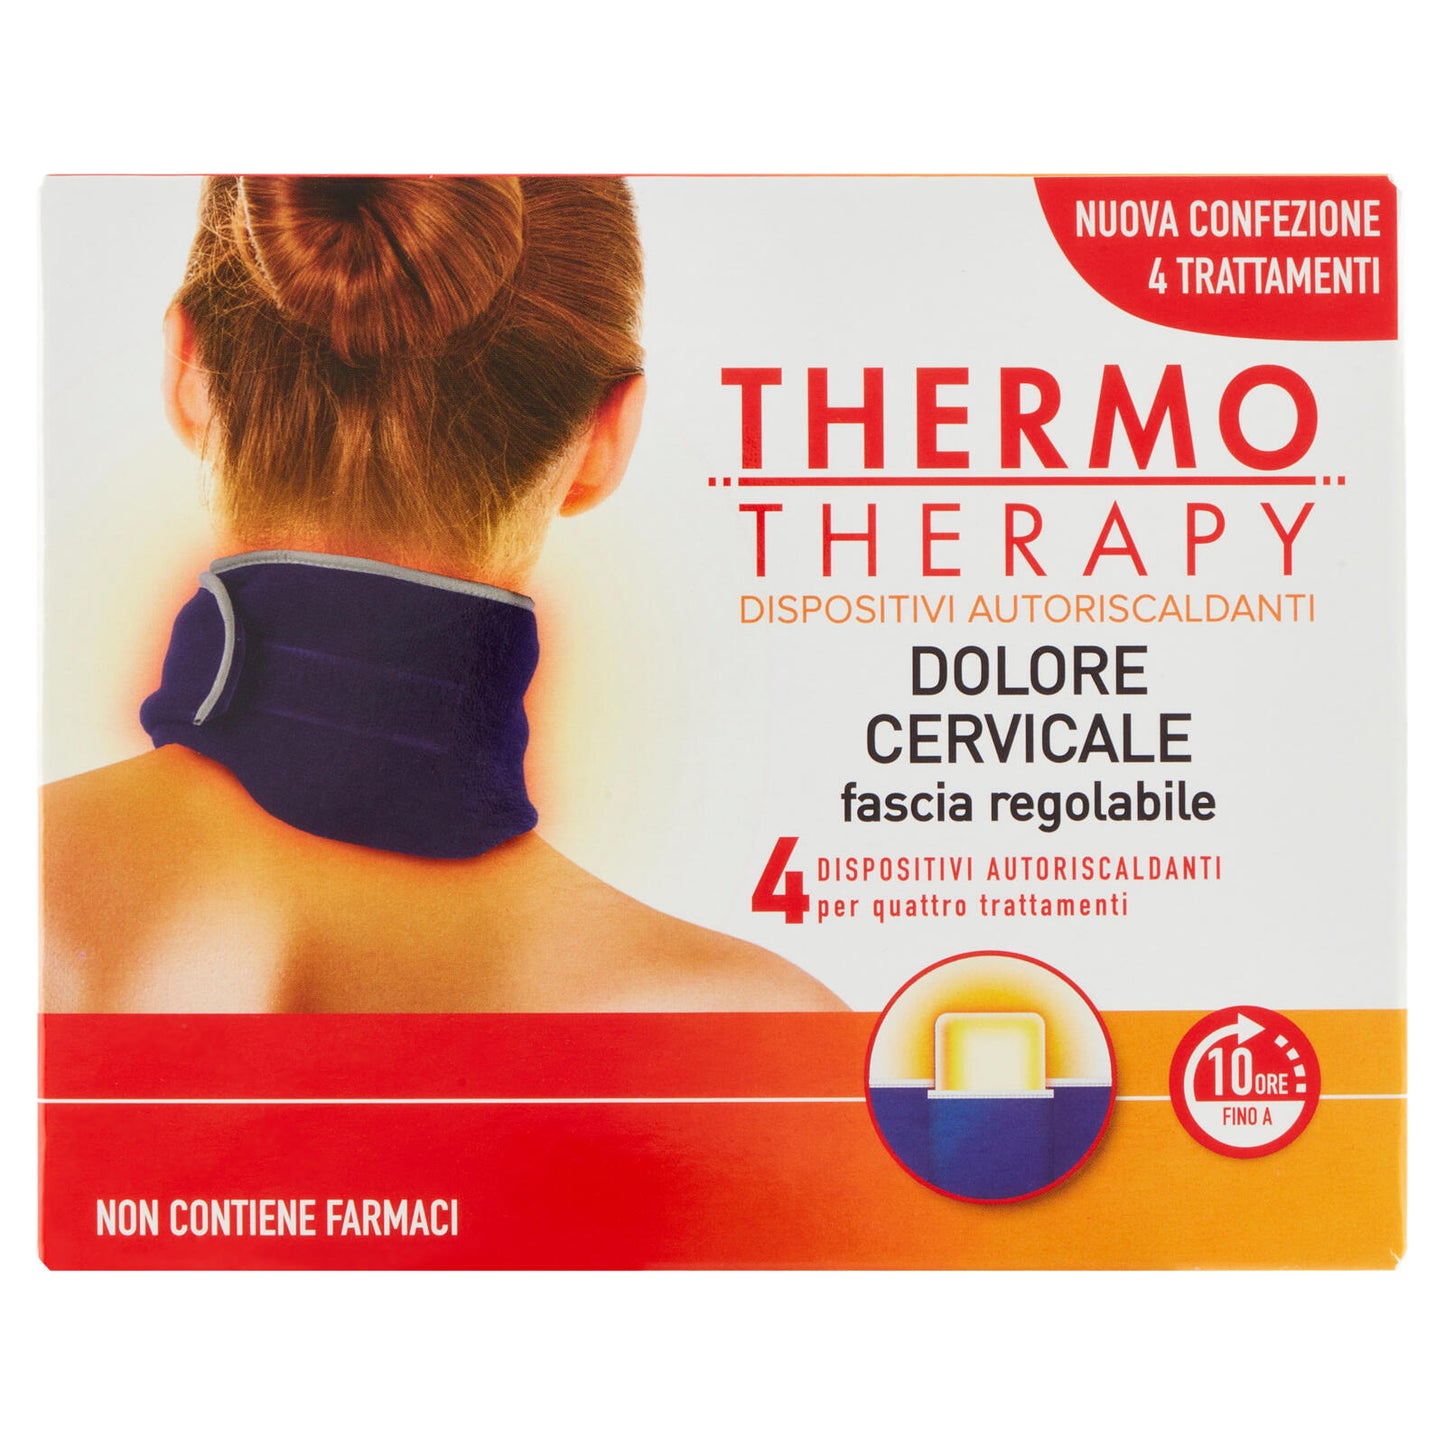 ThermoTherapy Dolore Cervicale fascia regolabile + 4 Dispositivi Autoriscaldanti